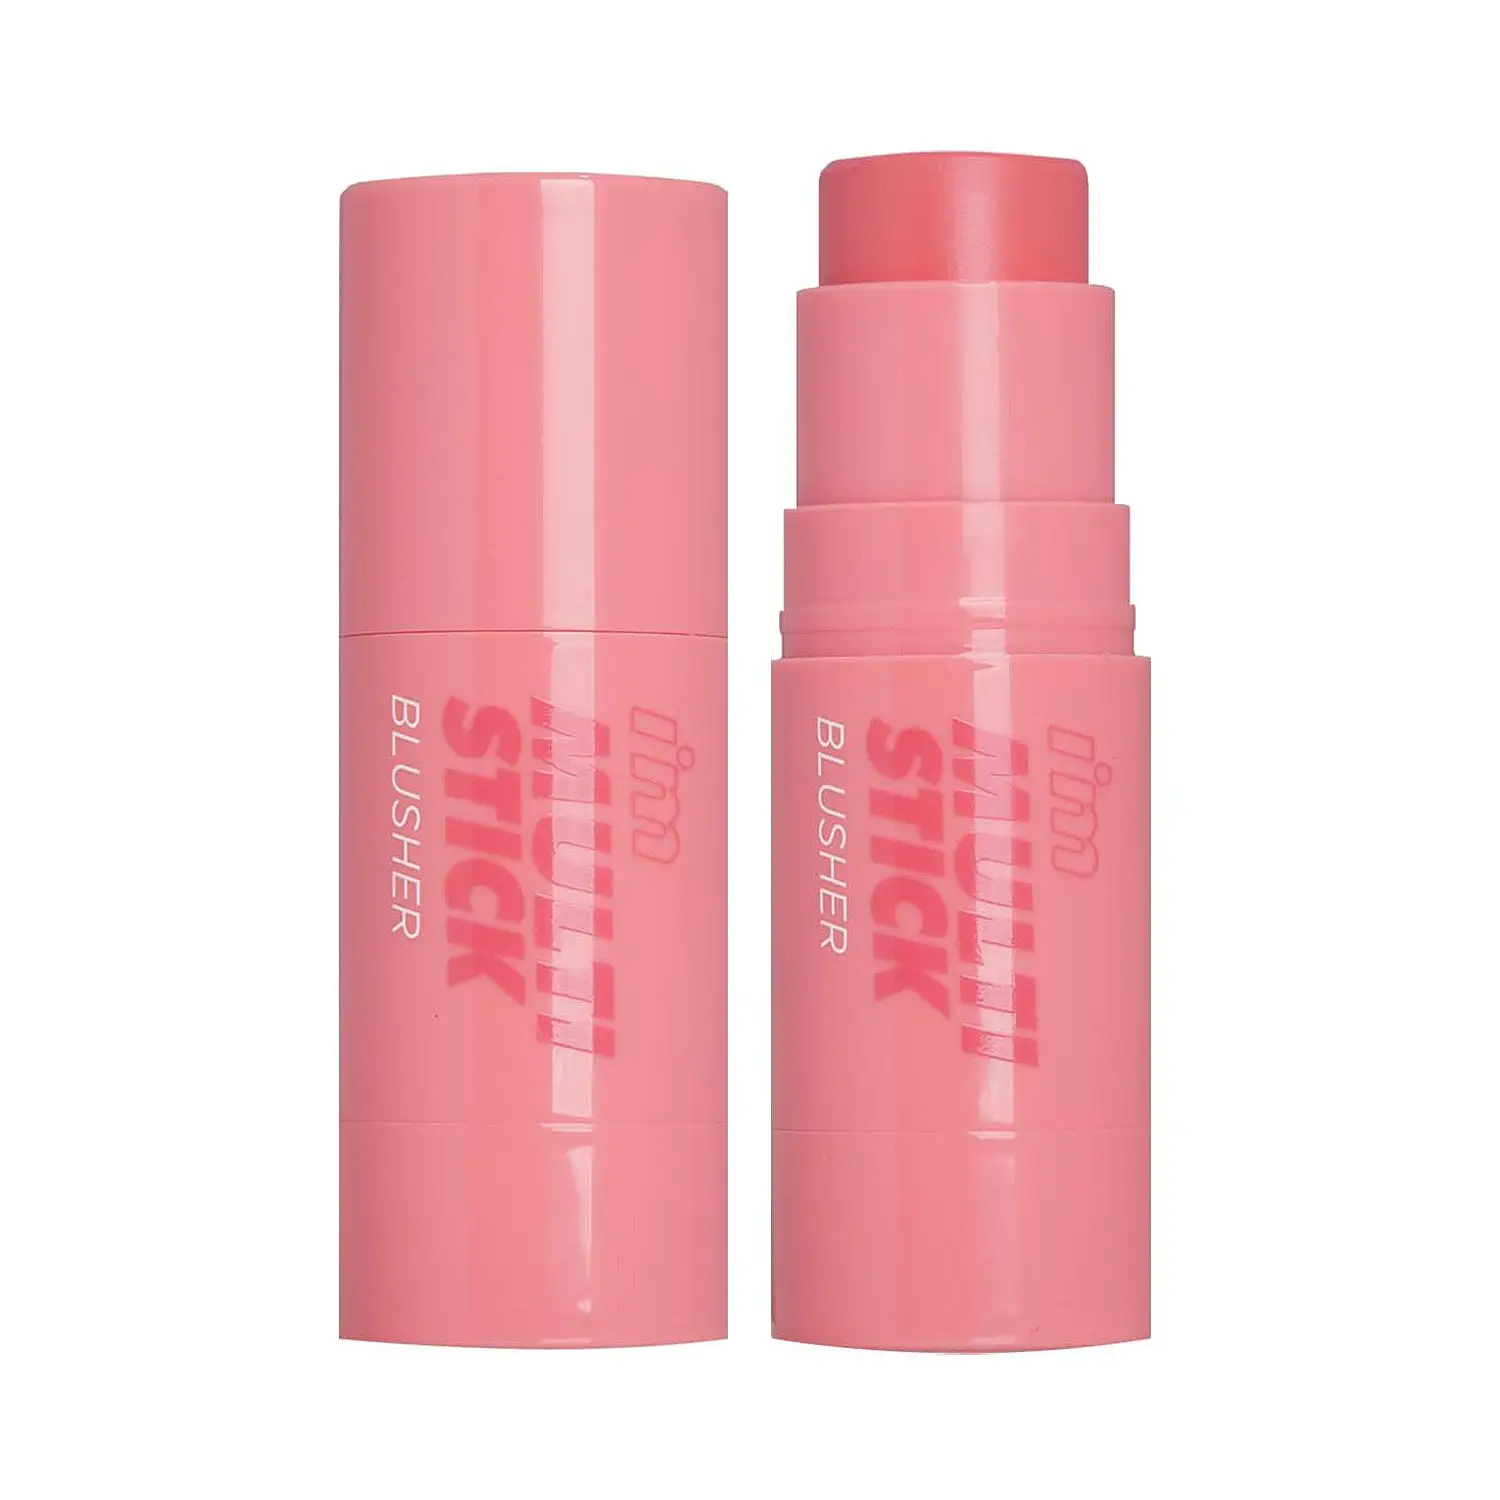 Корейский продукт для макияжа I & M MULTI STICK BLUSHER 01 от Lotte Duty Free